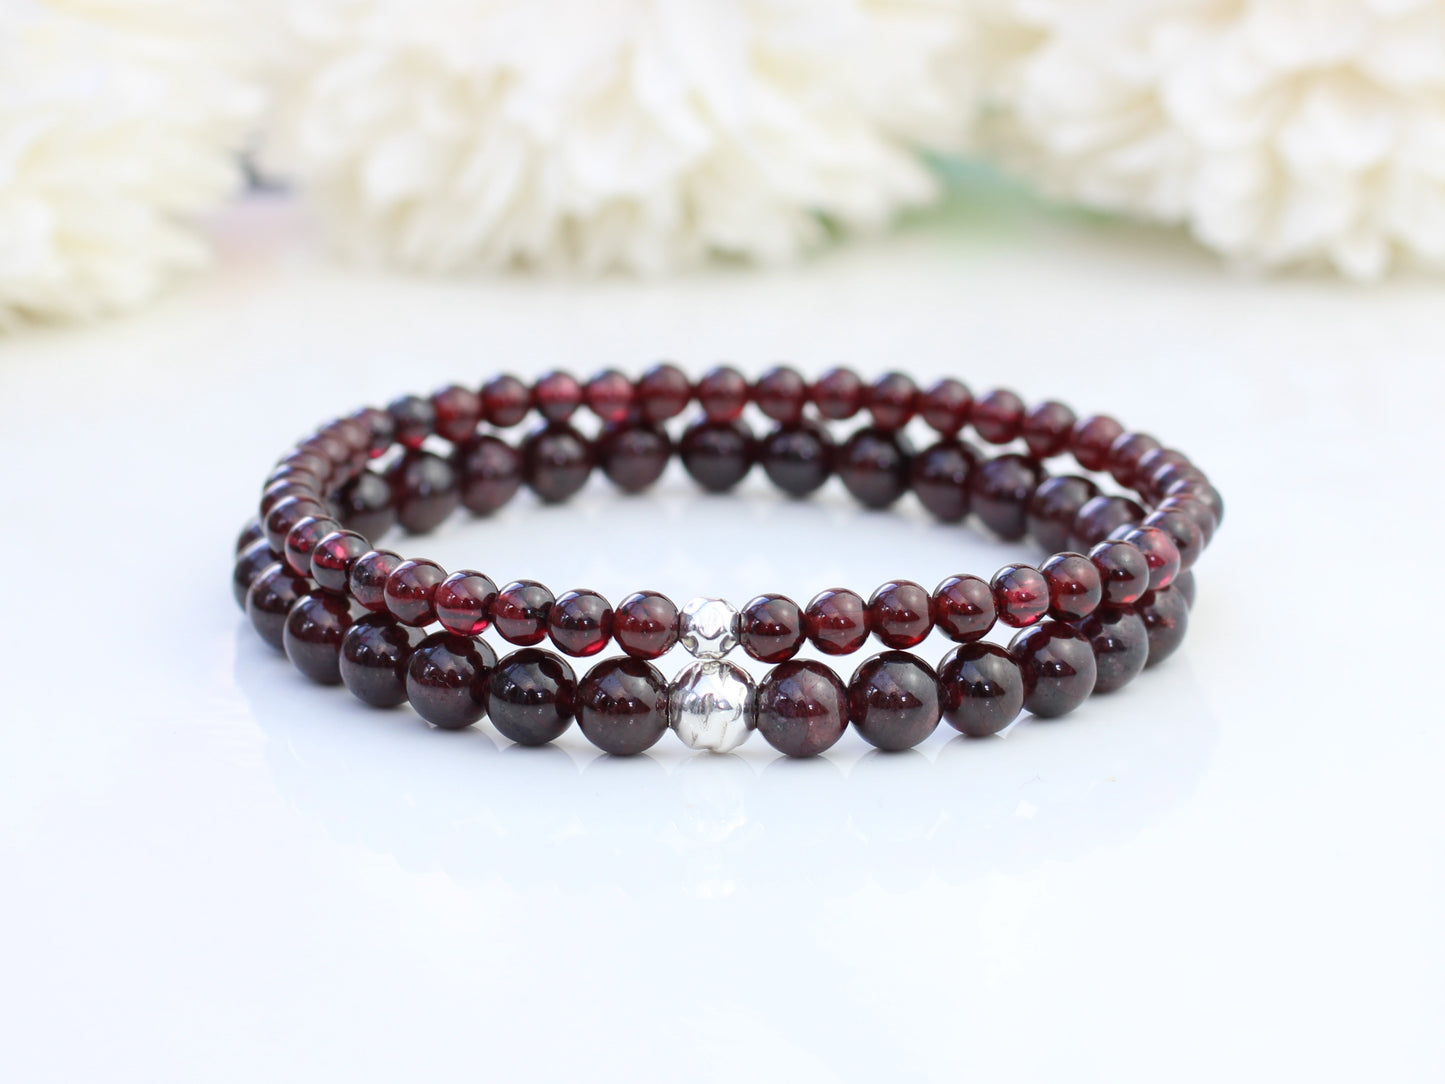 Garnet gemstone bead bracelet.